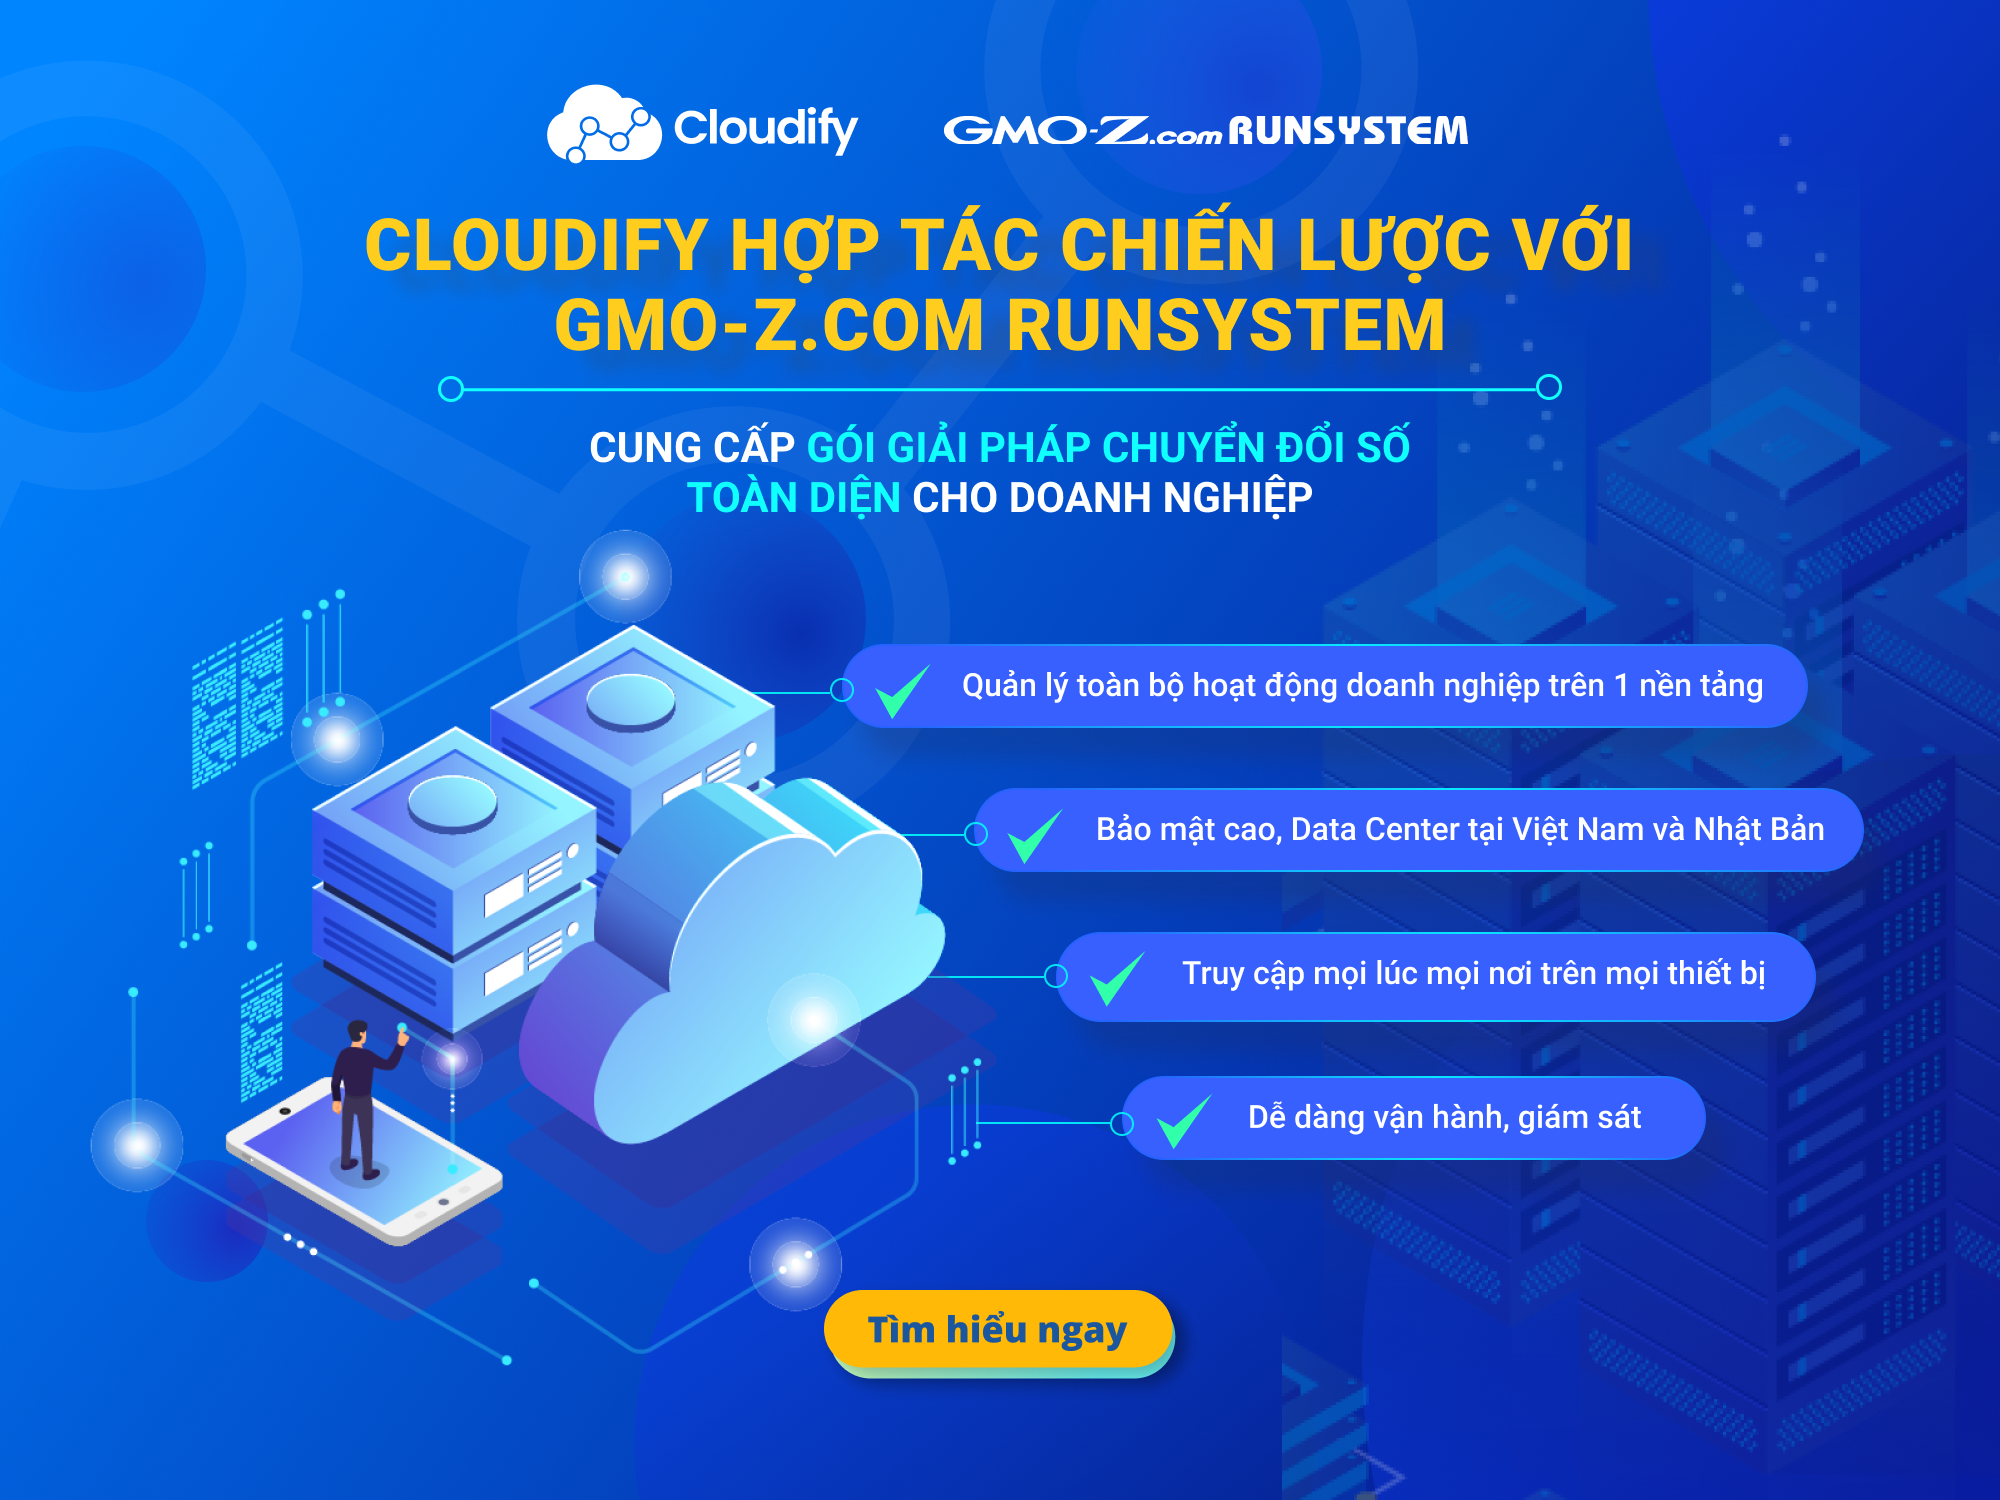 Cloudify hợp tác chiến lược với GMO-Z.com RUNSYSTEM ra mắt gói giải pháp chuyển đổi số toàn diện cho doanh nghiệp